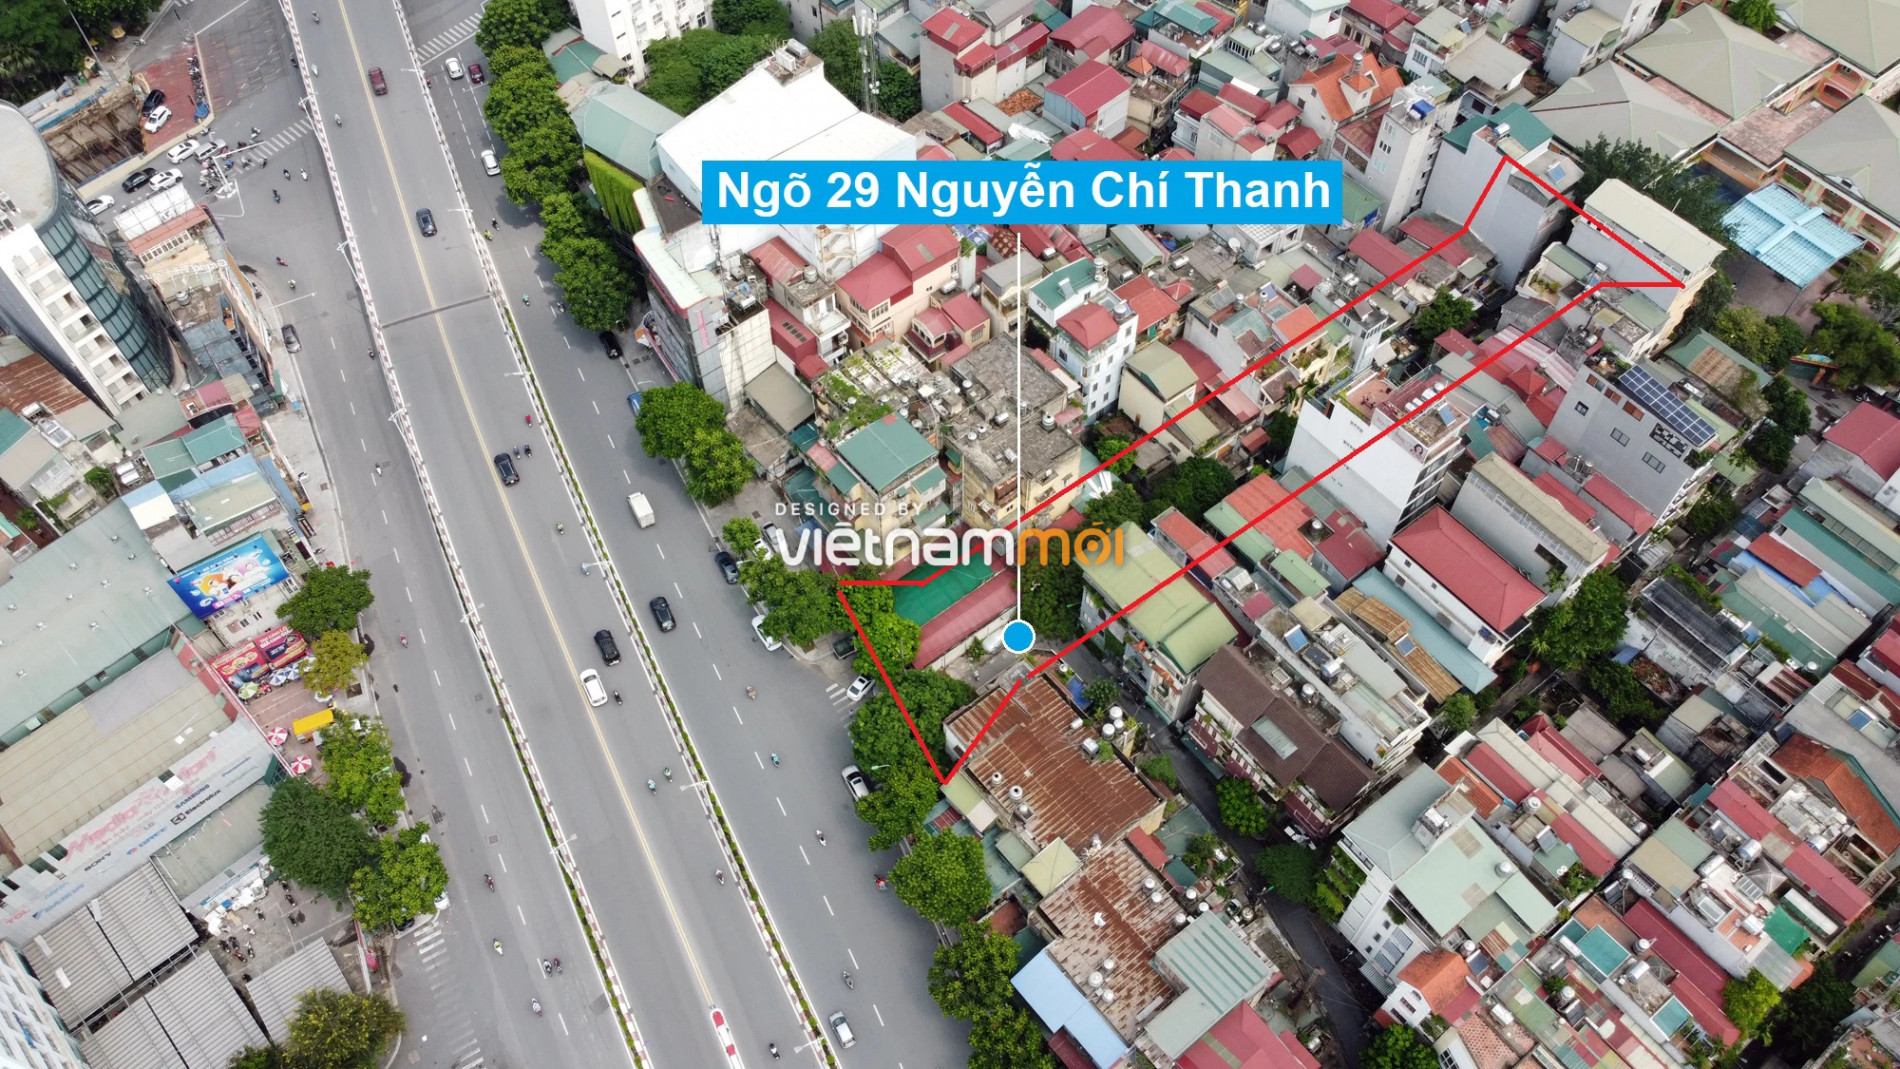 Những khu đất sắp thu hồi để mở đường ở phường Ngọc Khánh, Ba Đình, Hà Nội (phần 4) - Ảnh 12.